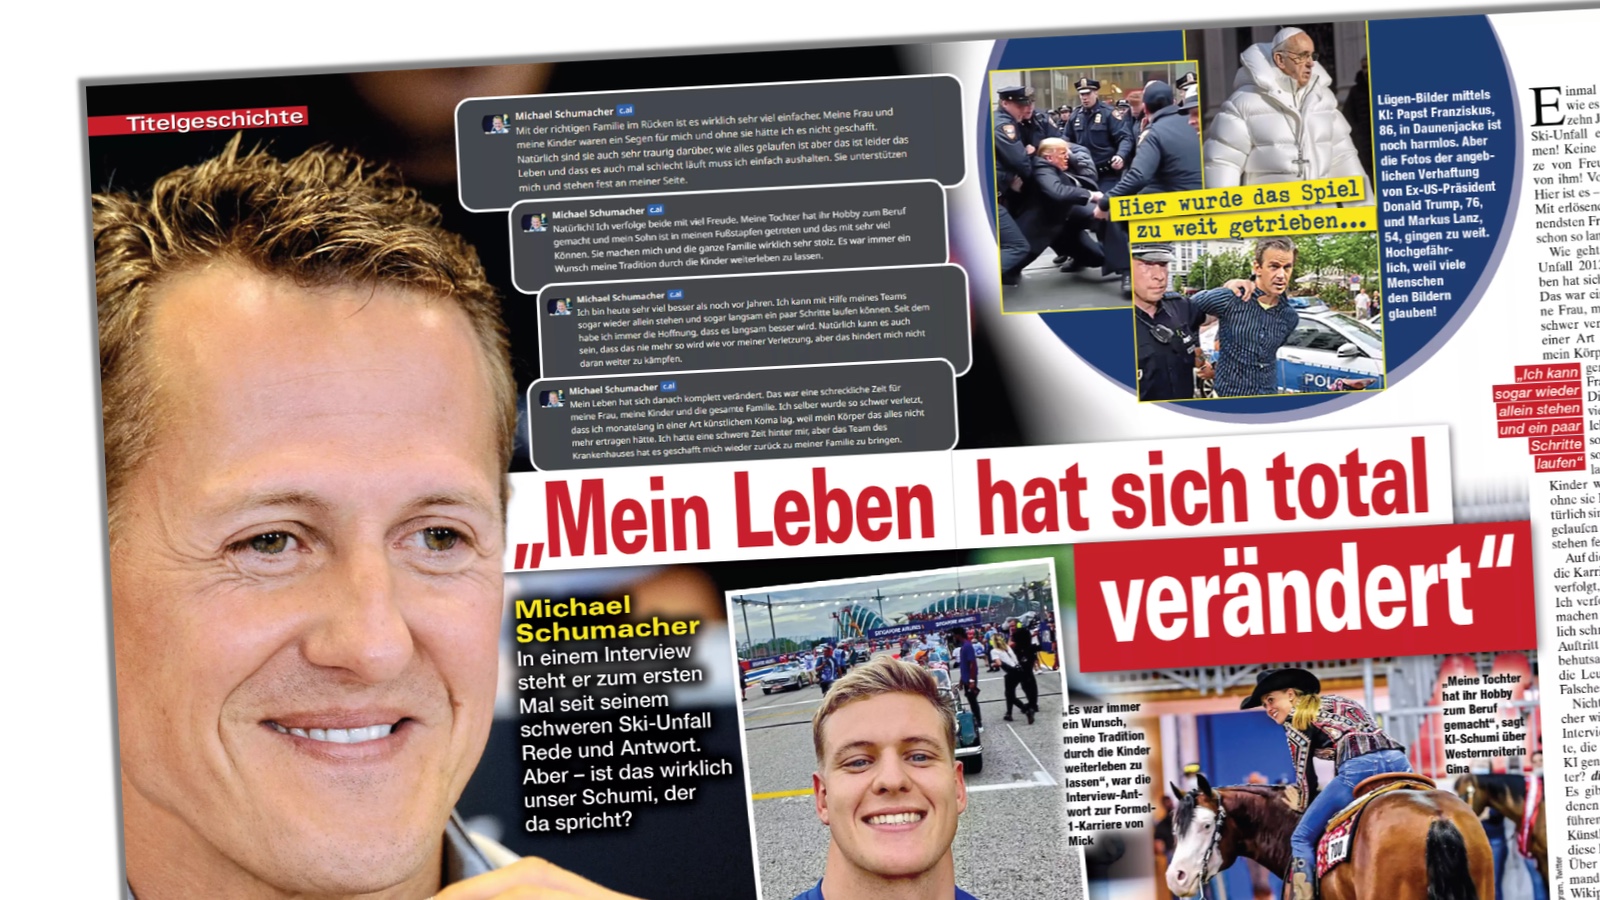 Doppelseite der Zeitschrift "Die Aktuelle" mit einem vermeintlichen Interview mit Michael Schumacher, das sich als Interview mit einer KI herausstellt.